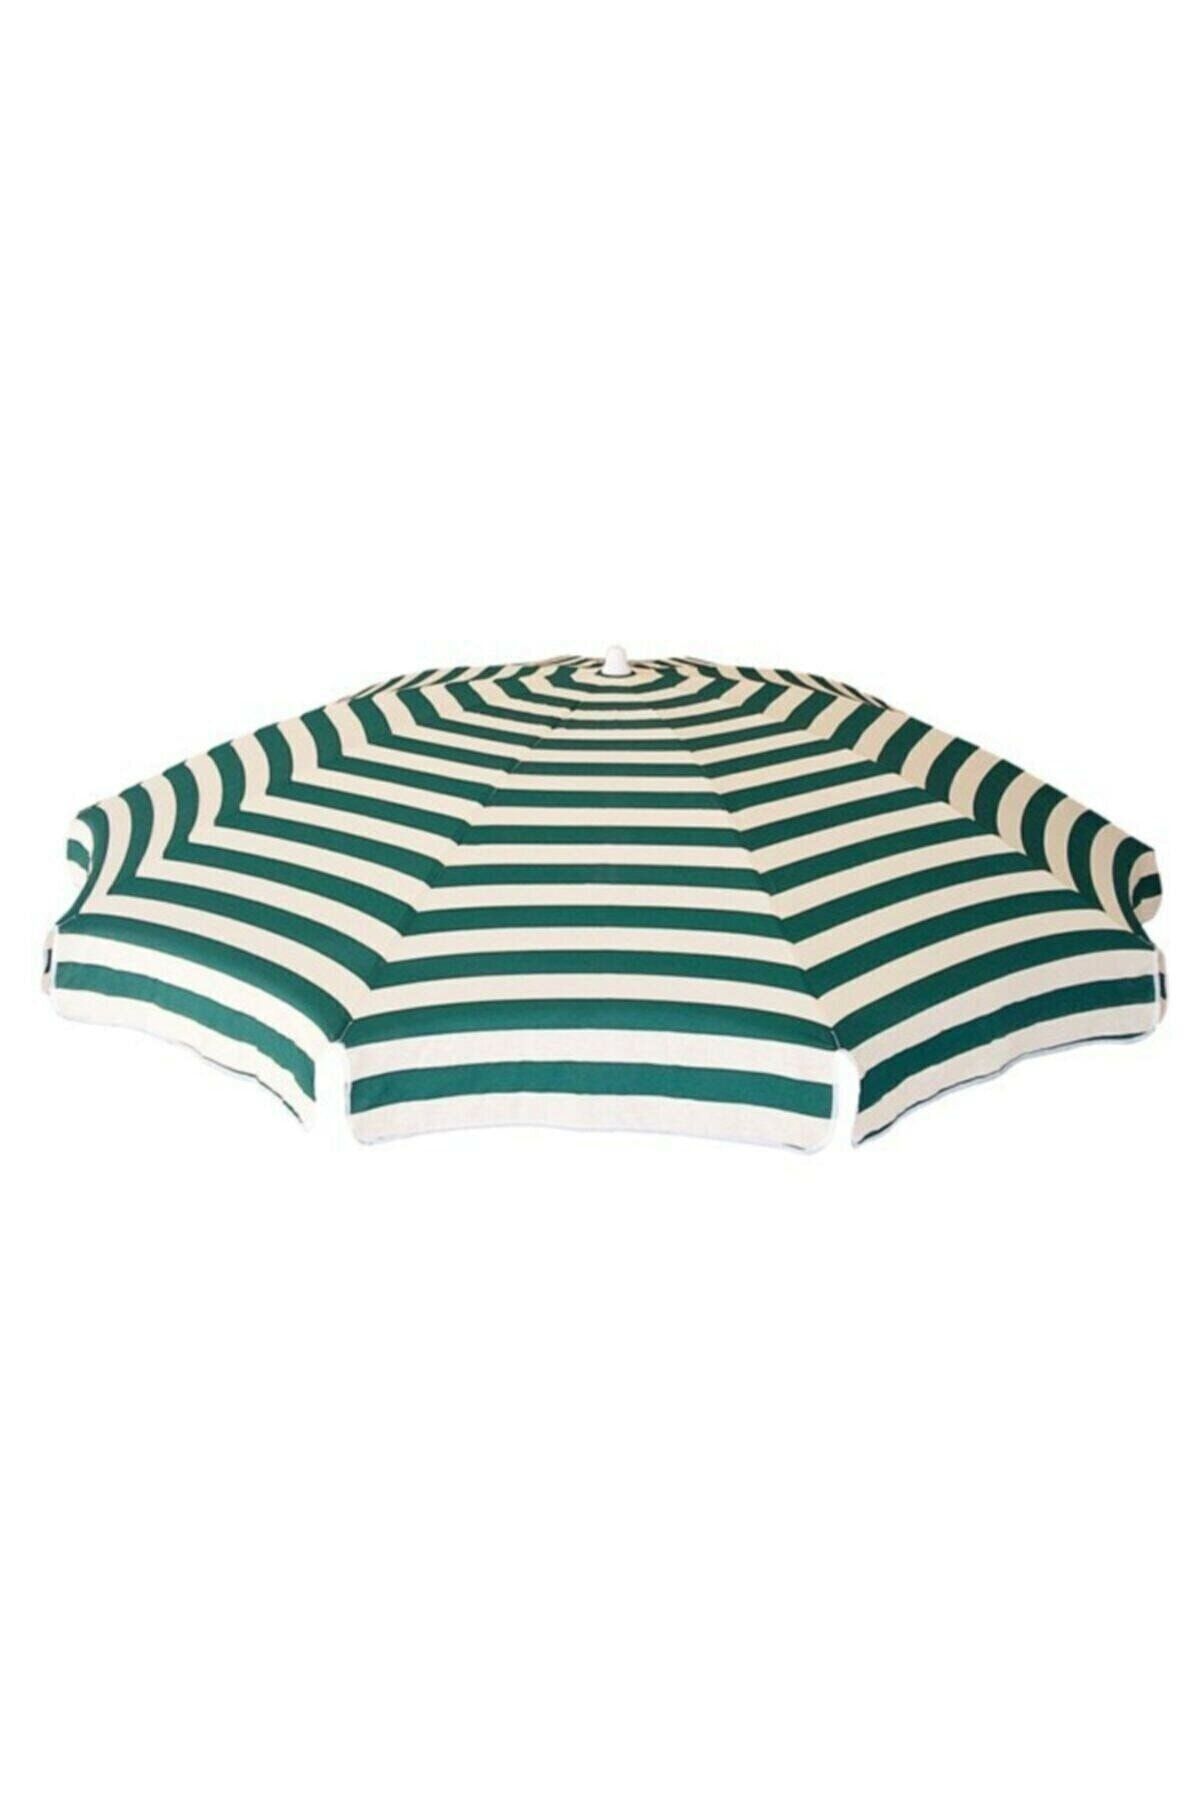 ne güzel Eğilir Katlanır Şemsiye Gölgelik Plaj Balkon Bahçe Teras Şemsiyesi 180 cm